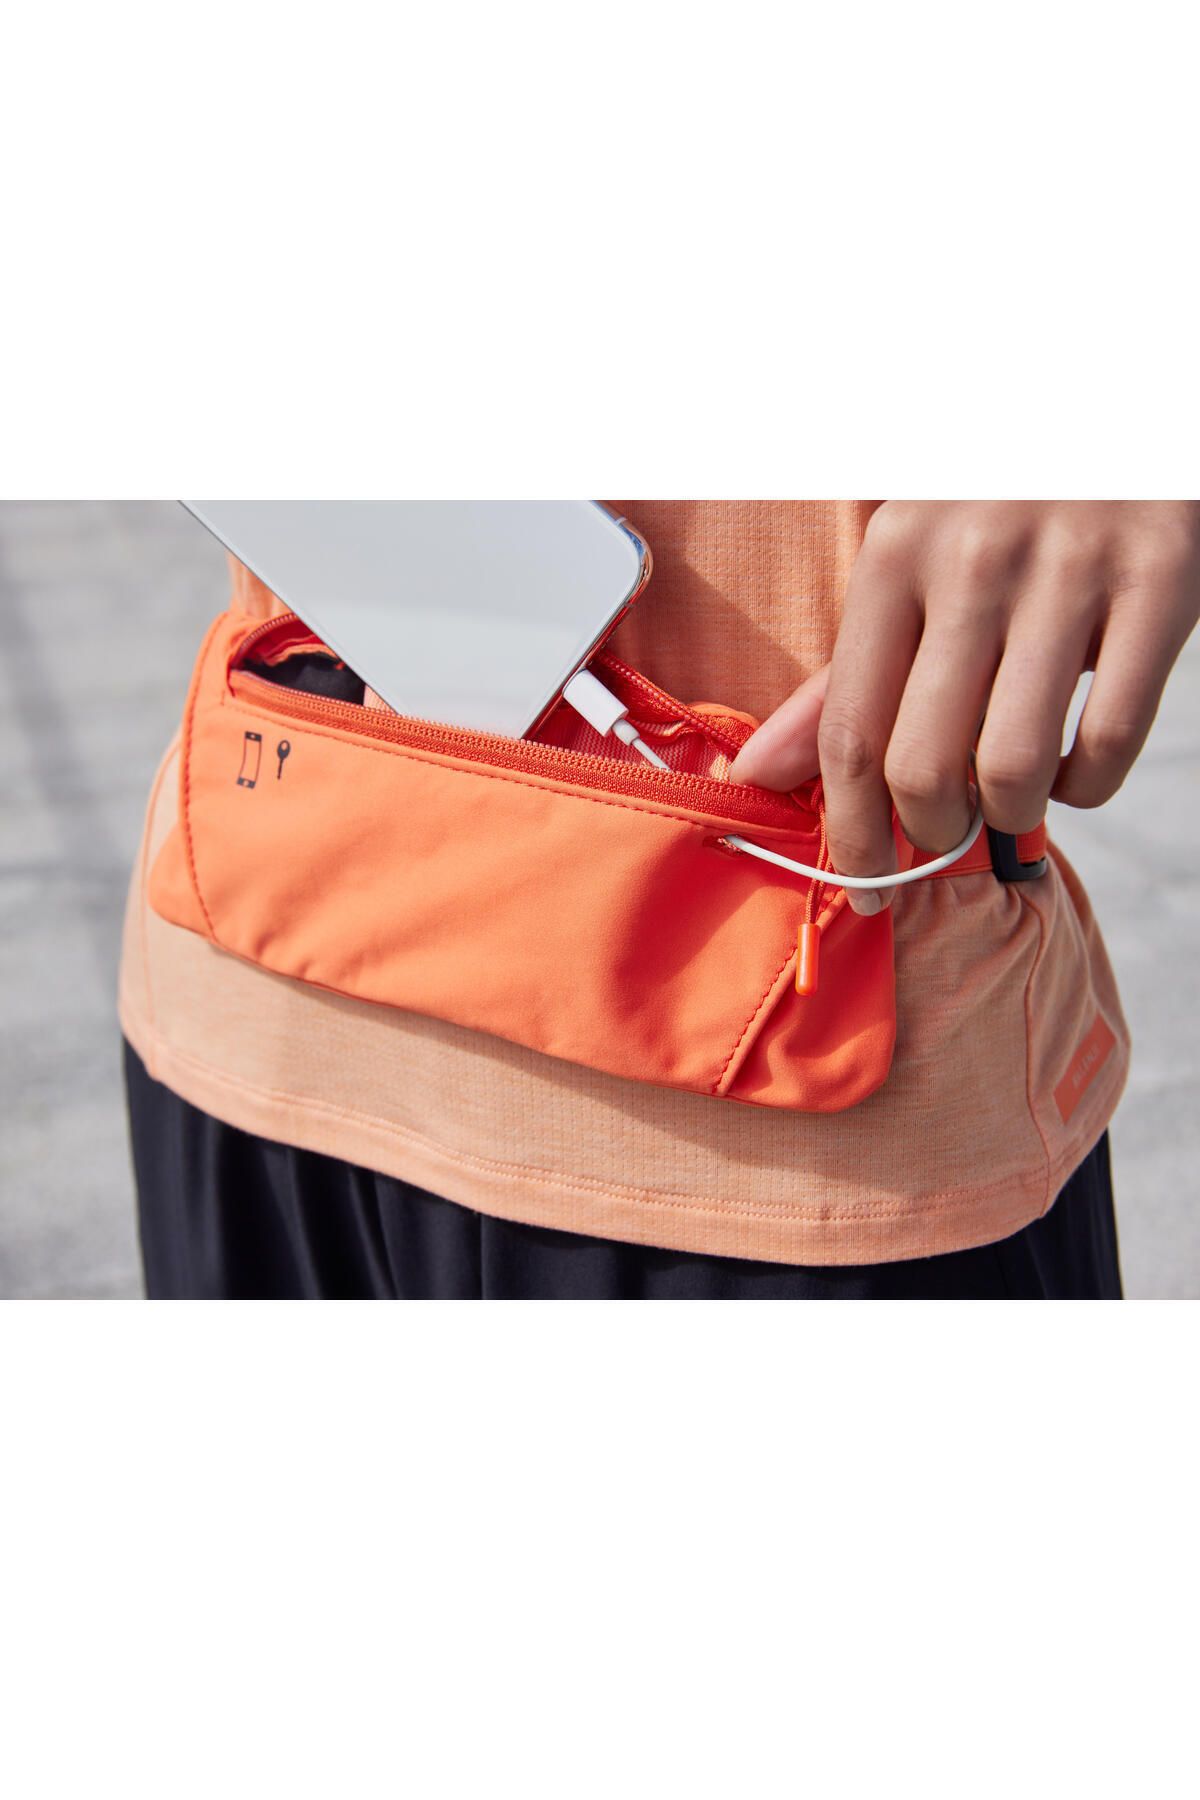 Travel Waist Bag 2L Khaki/Orange